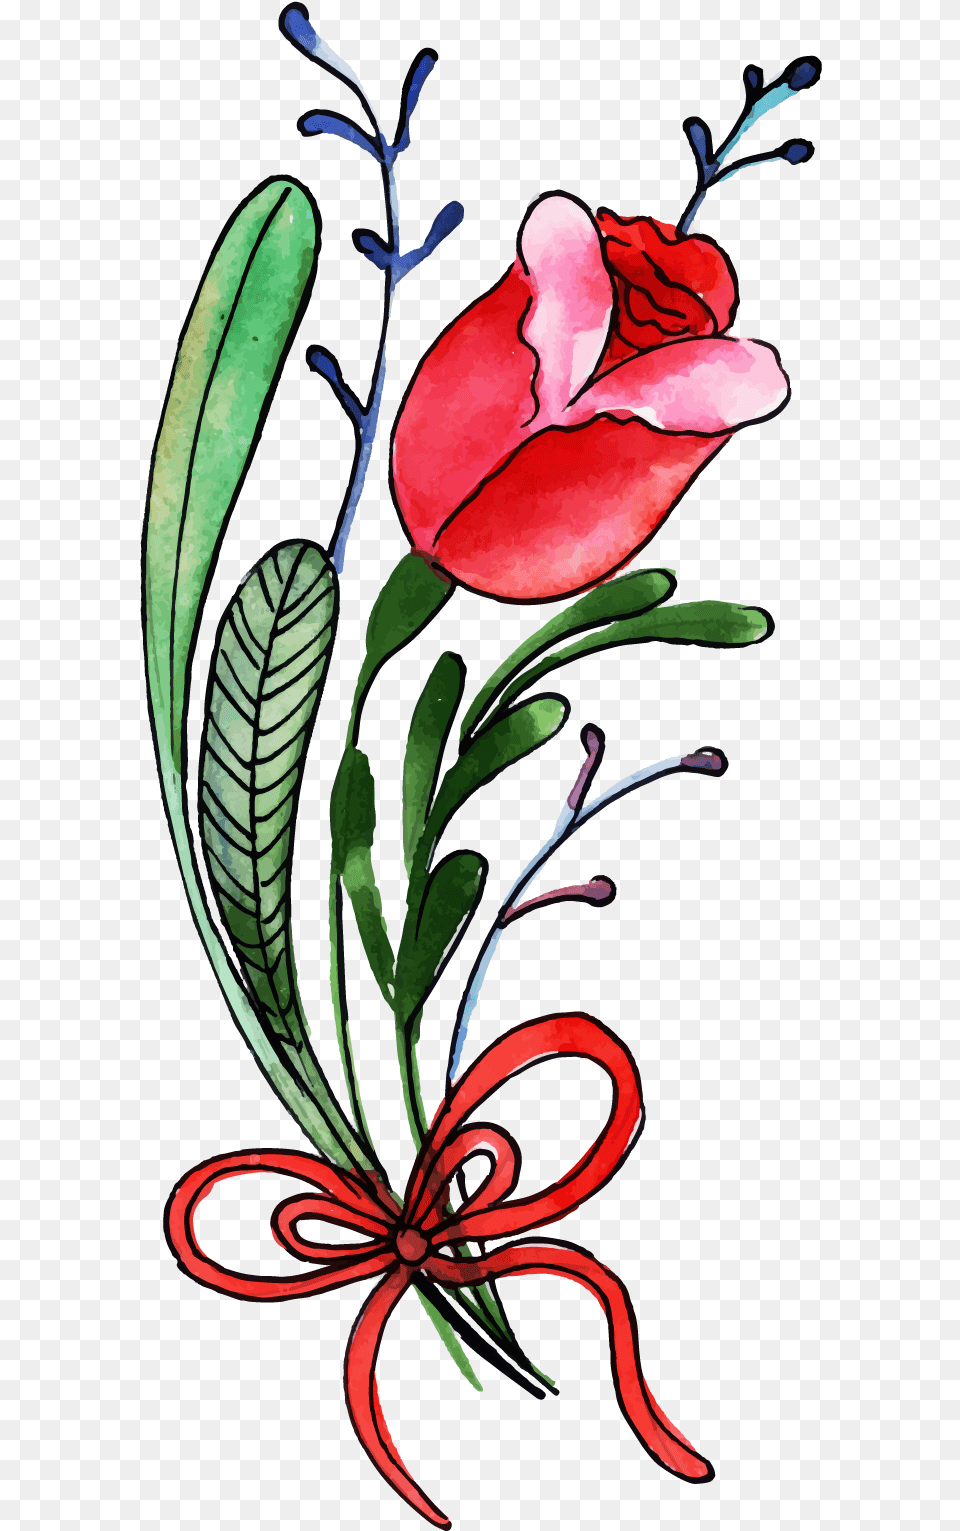 Free Watercolor Valentine Floral Konfest, Art, Floral Design, Flower, Graphics Png